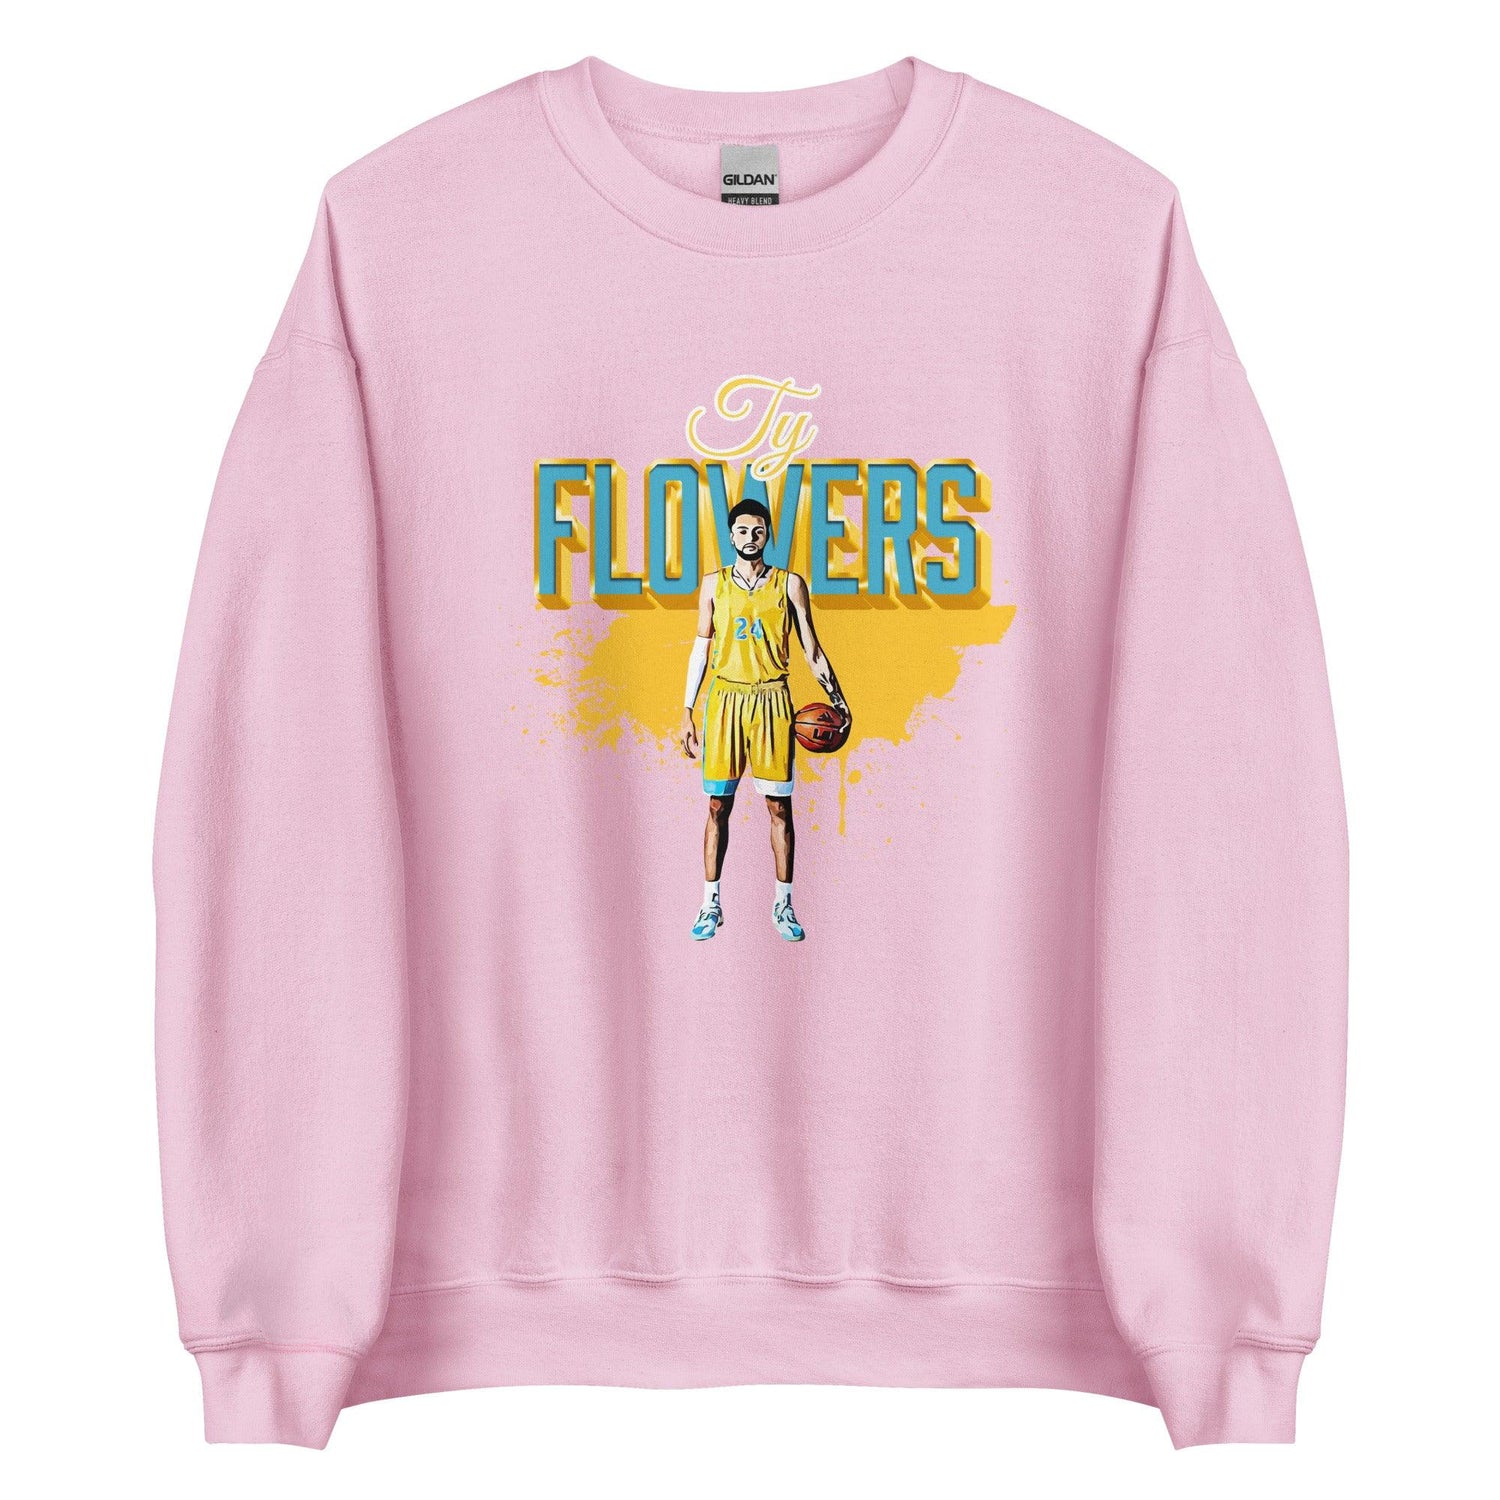 Ty Flowers “Essential” Sweatshirt - Fan Arch